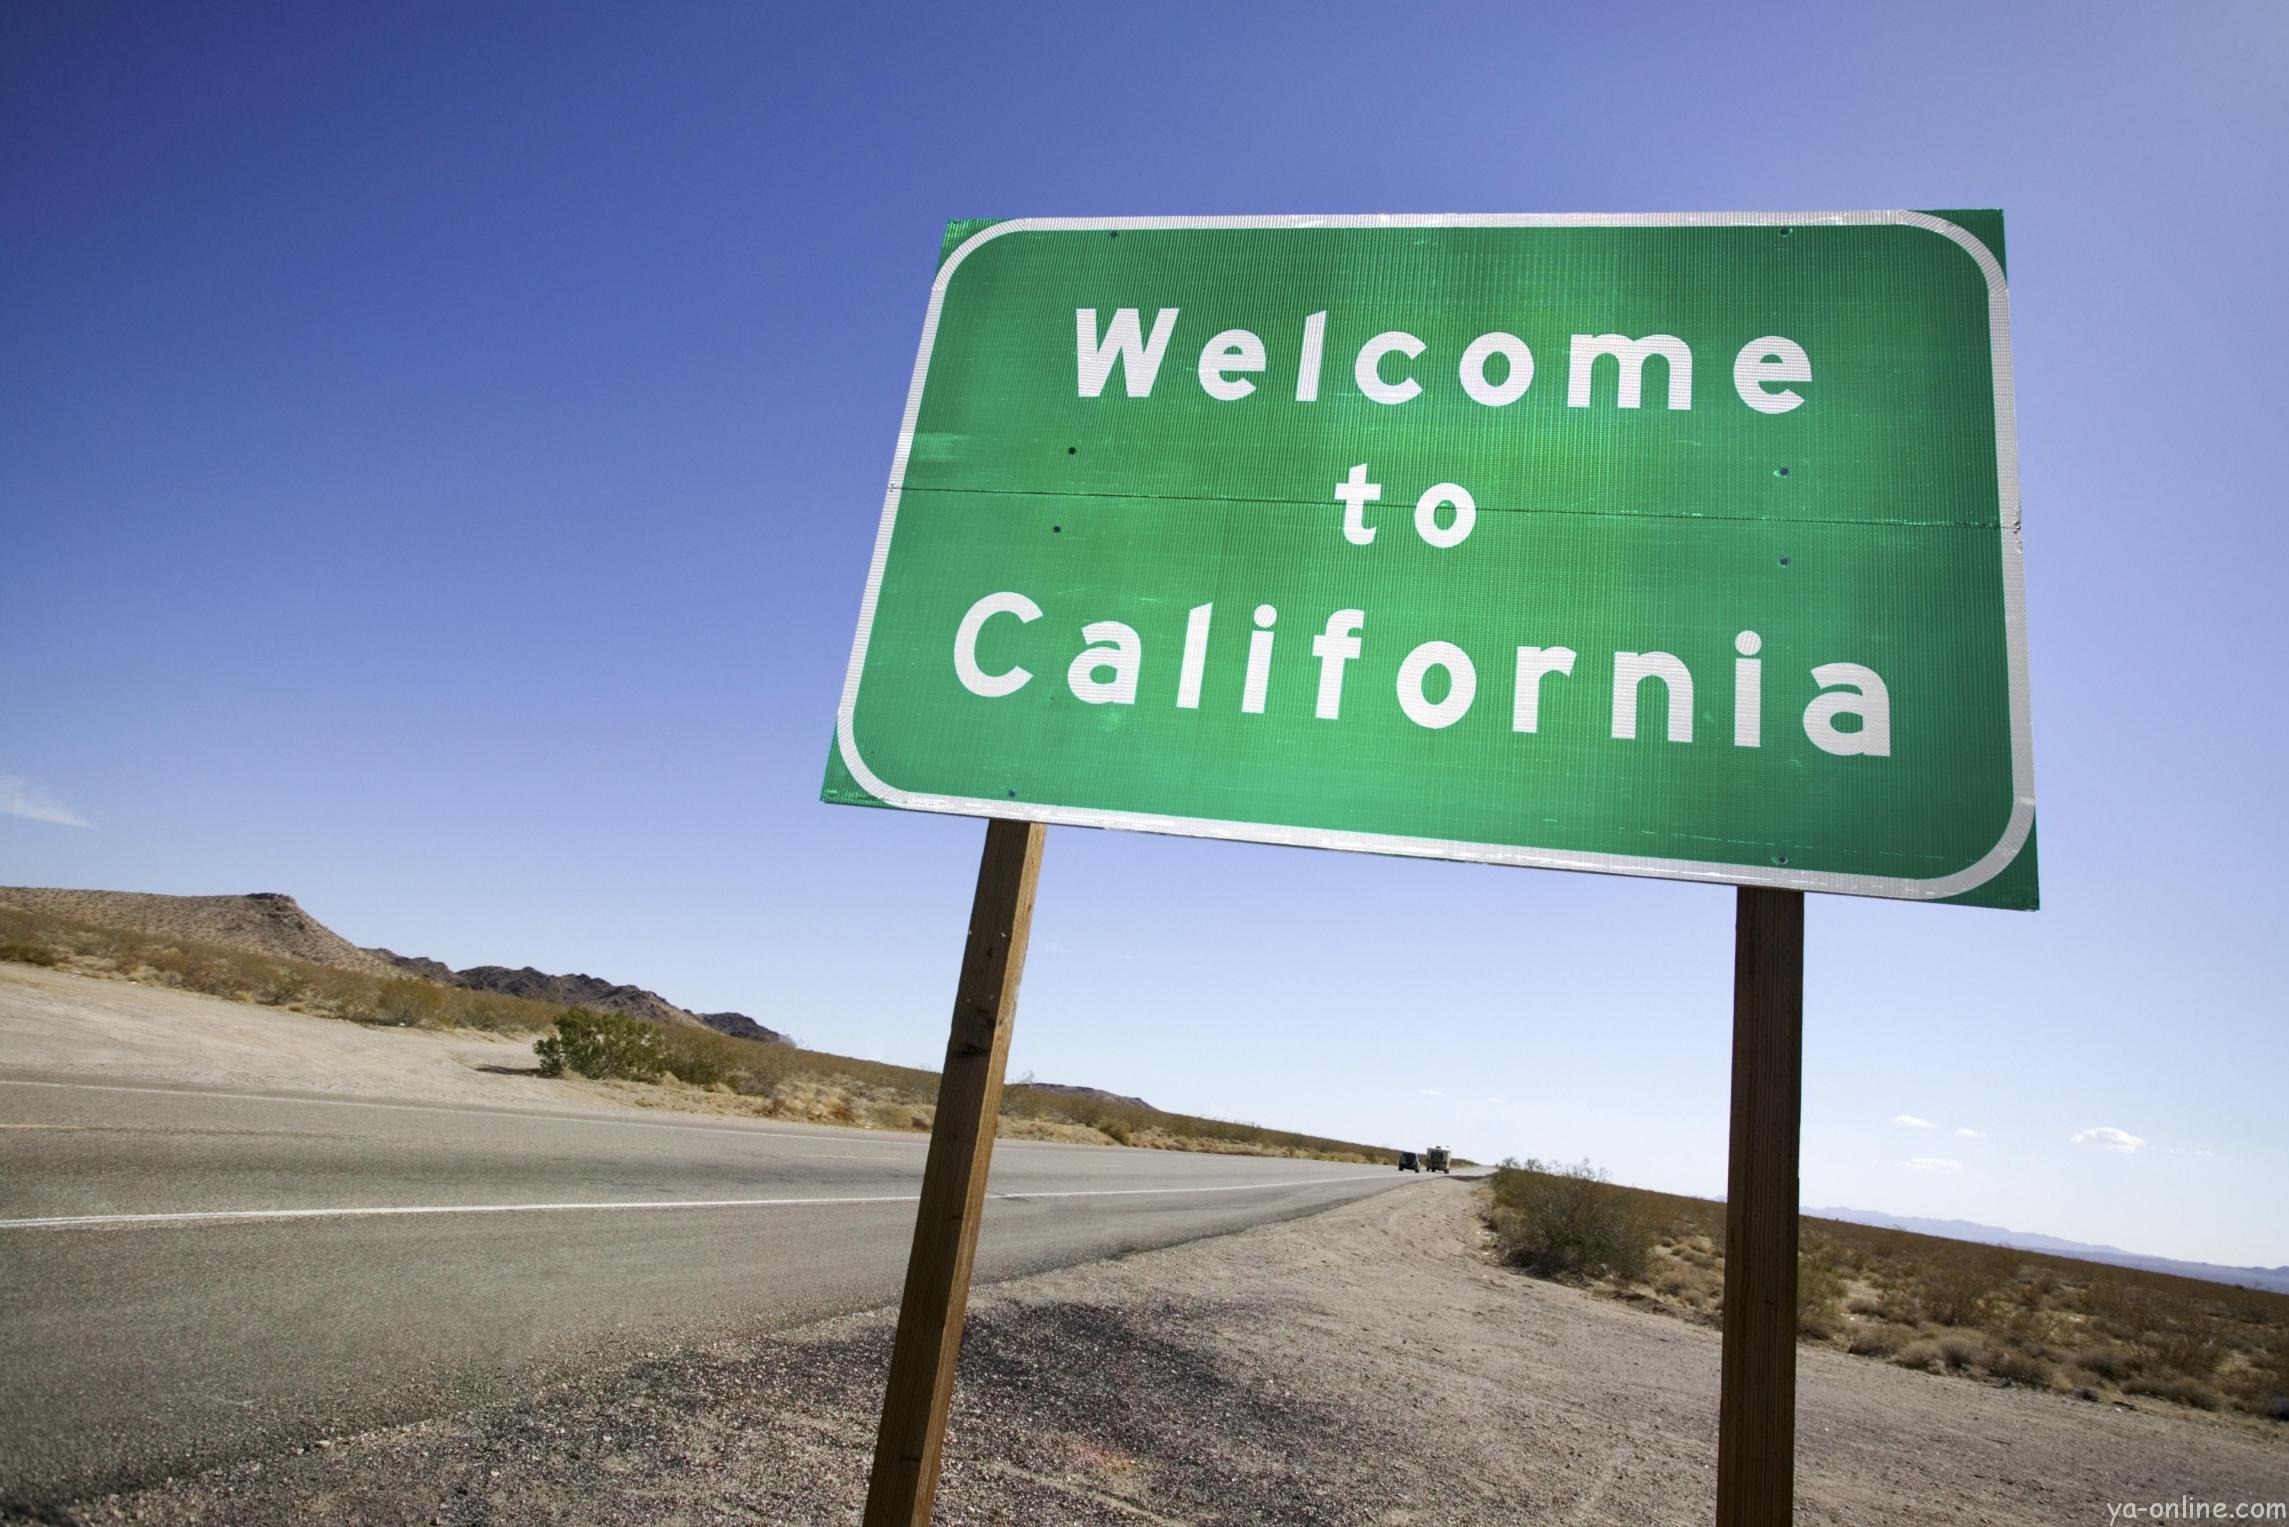 Калифорния проведет референдум по изменению Конституции и отделению штата в 2019 году